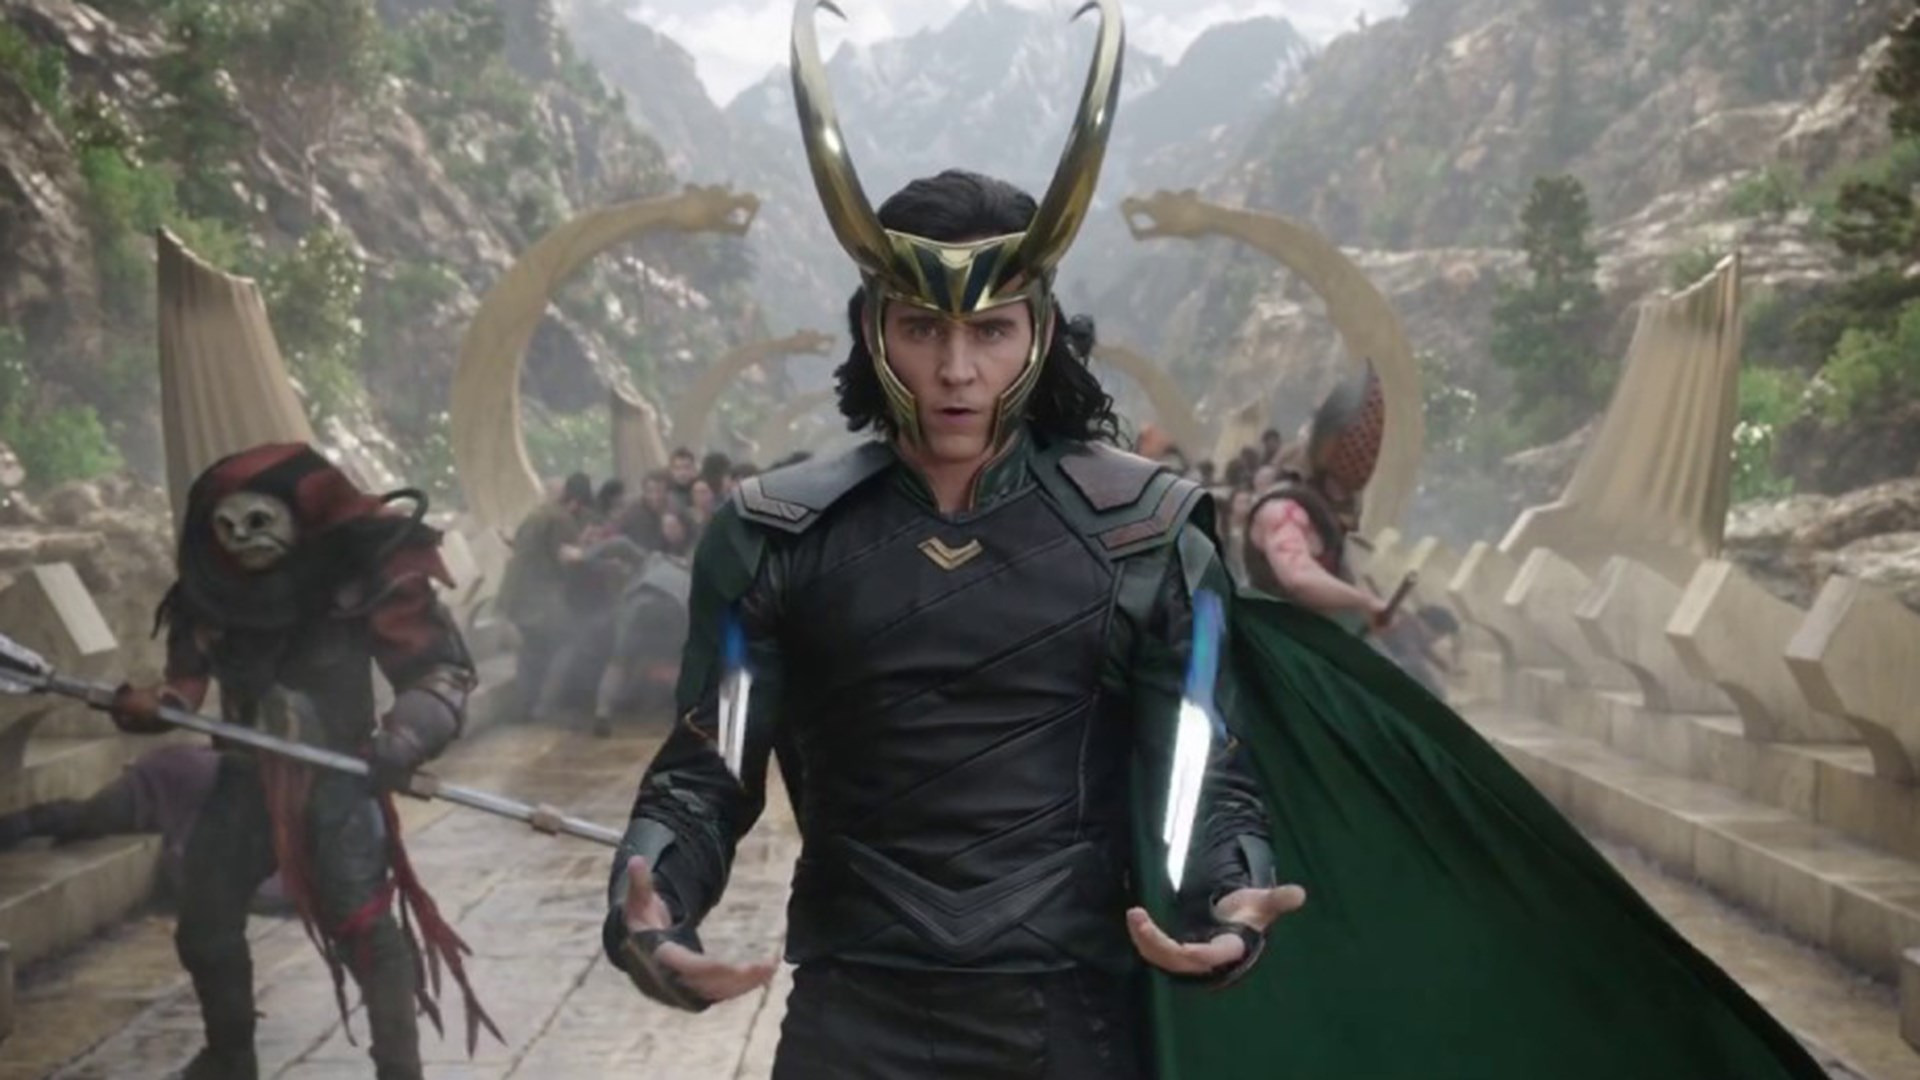 Disney Plus'ta yayınlanacak olan Loki'nin devam sezonları da geliyor gibi